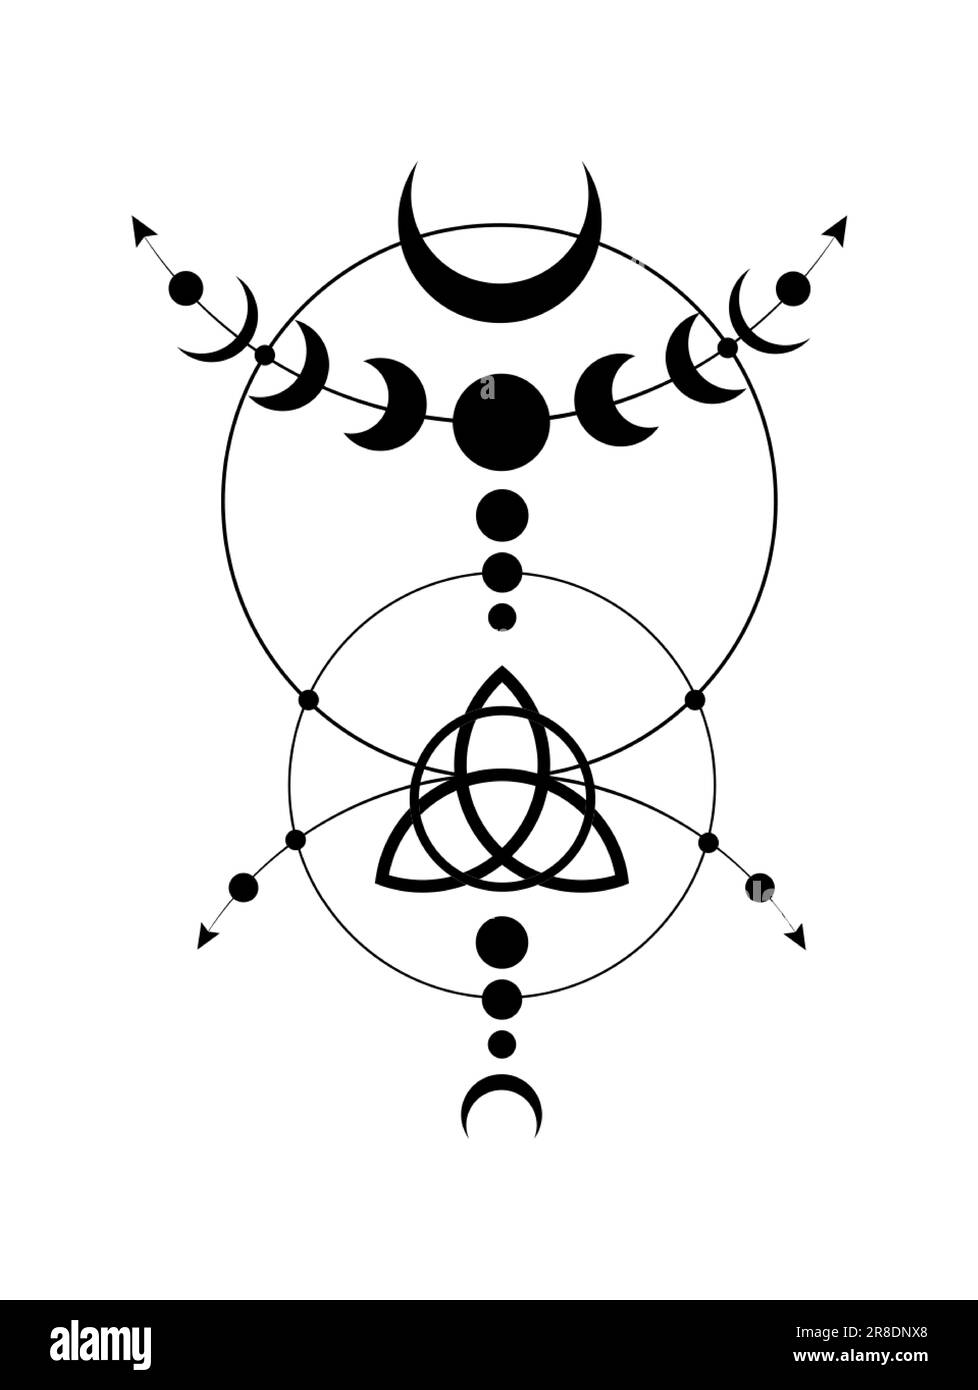 Phases mystiques de la Lune bordure du cadre de Wicca. Triquetra géométrie sacrée. Logo, symbole de la triple déesse Wiccan, cercle d'énergie, vecteur de style boho tattoo noir Illustration de Vecteur